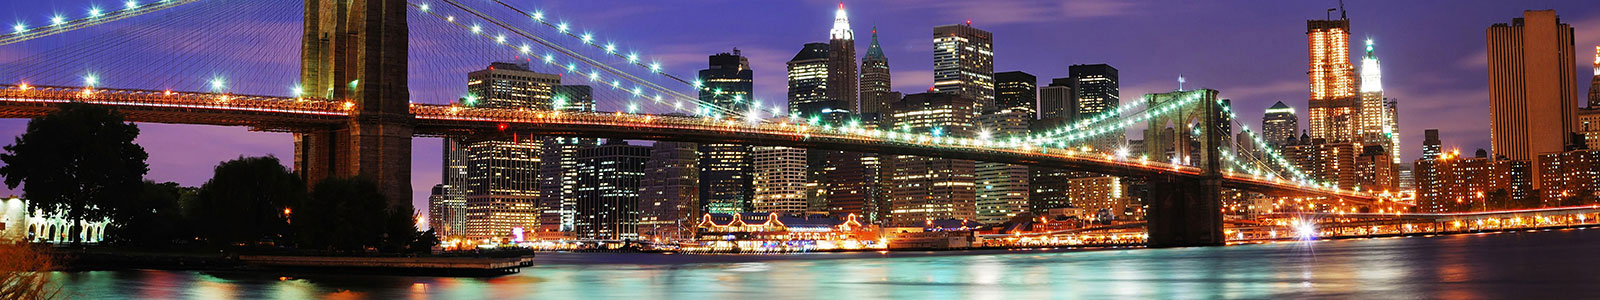 №437 - Огни Бруклинского моста в Нью-Йорке ночью